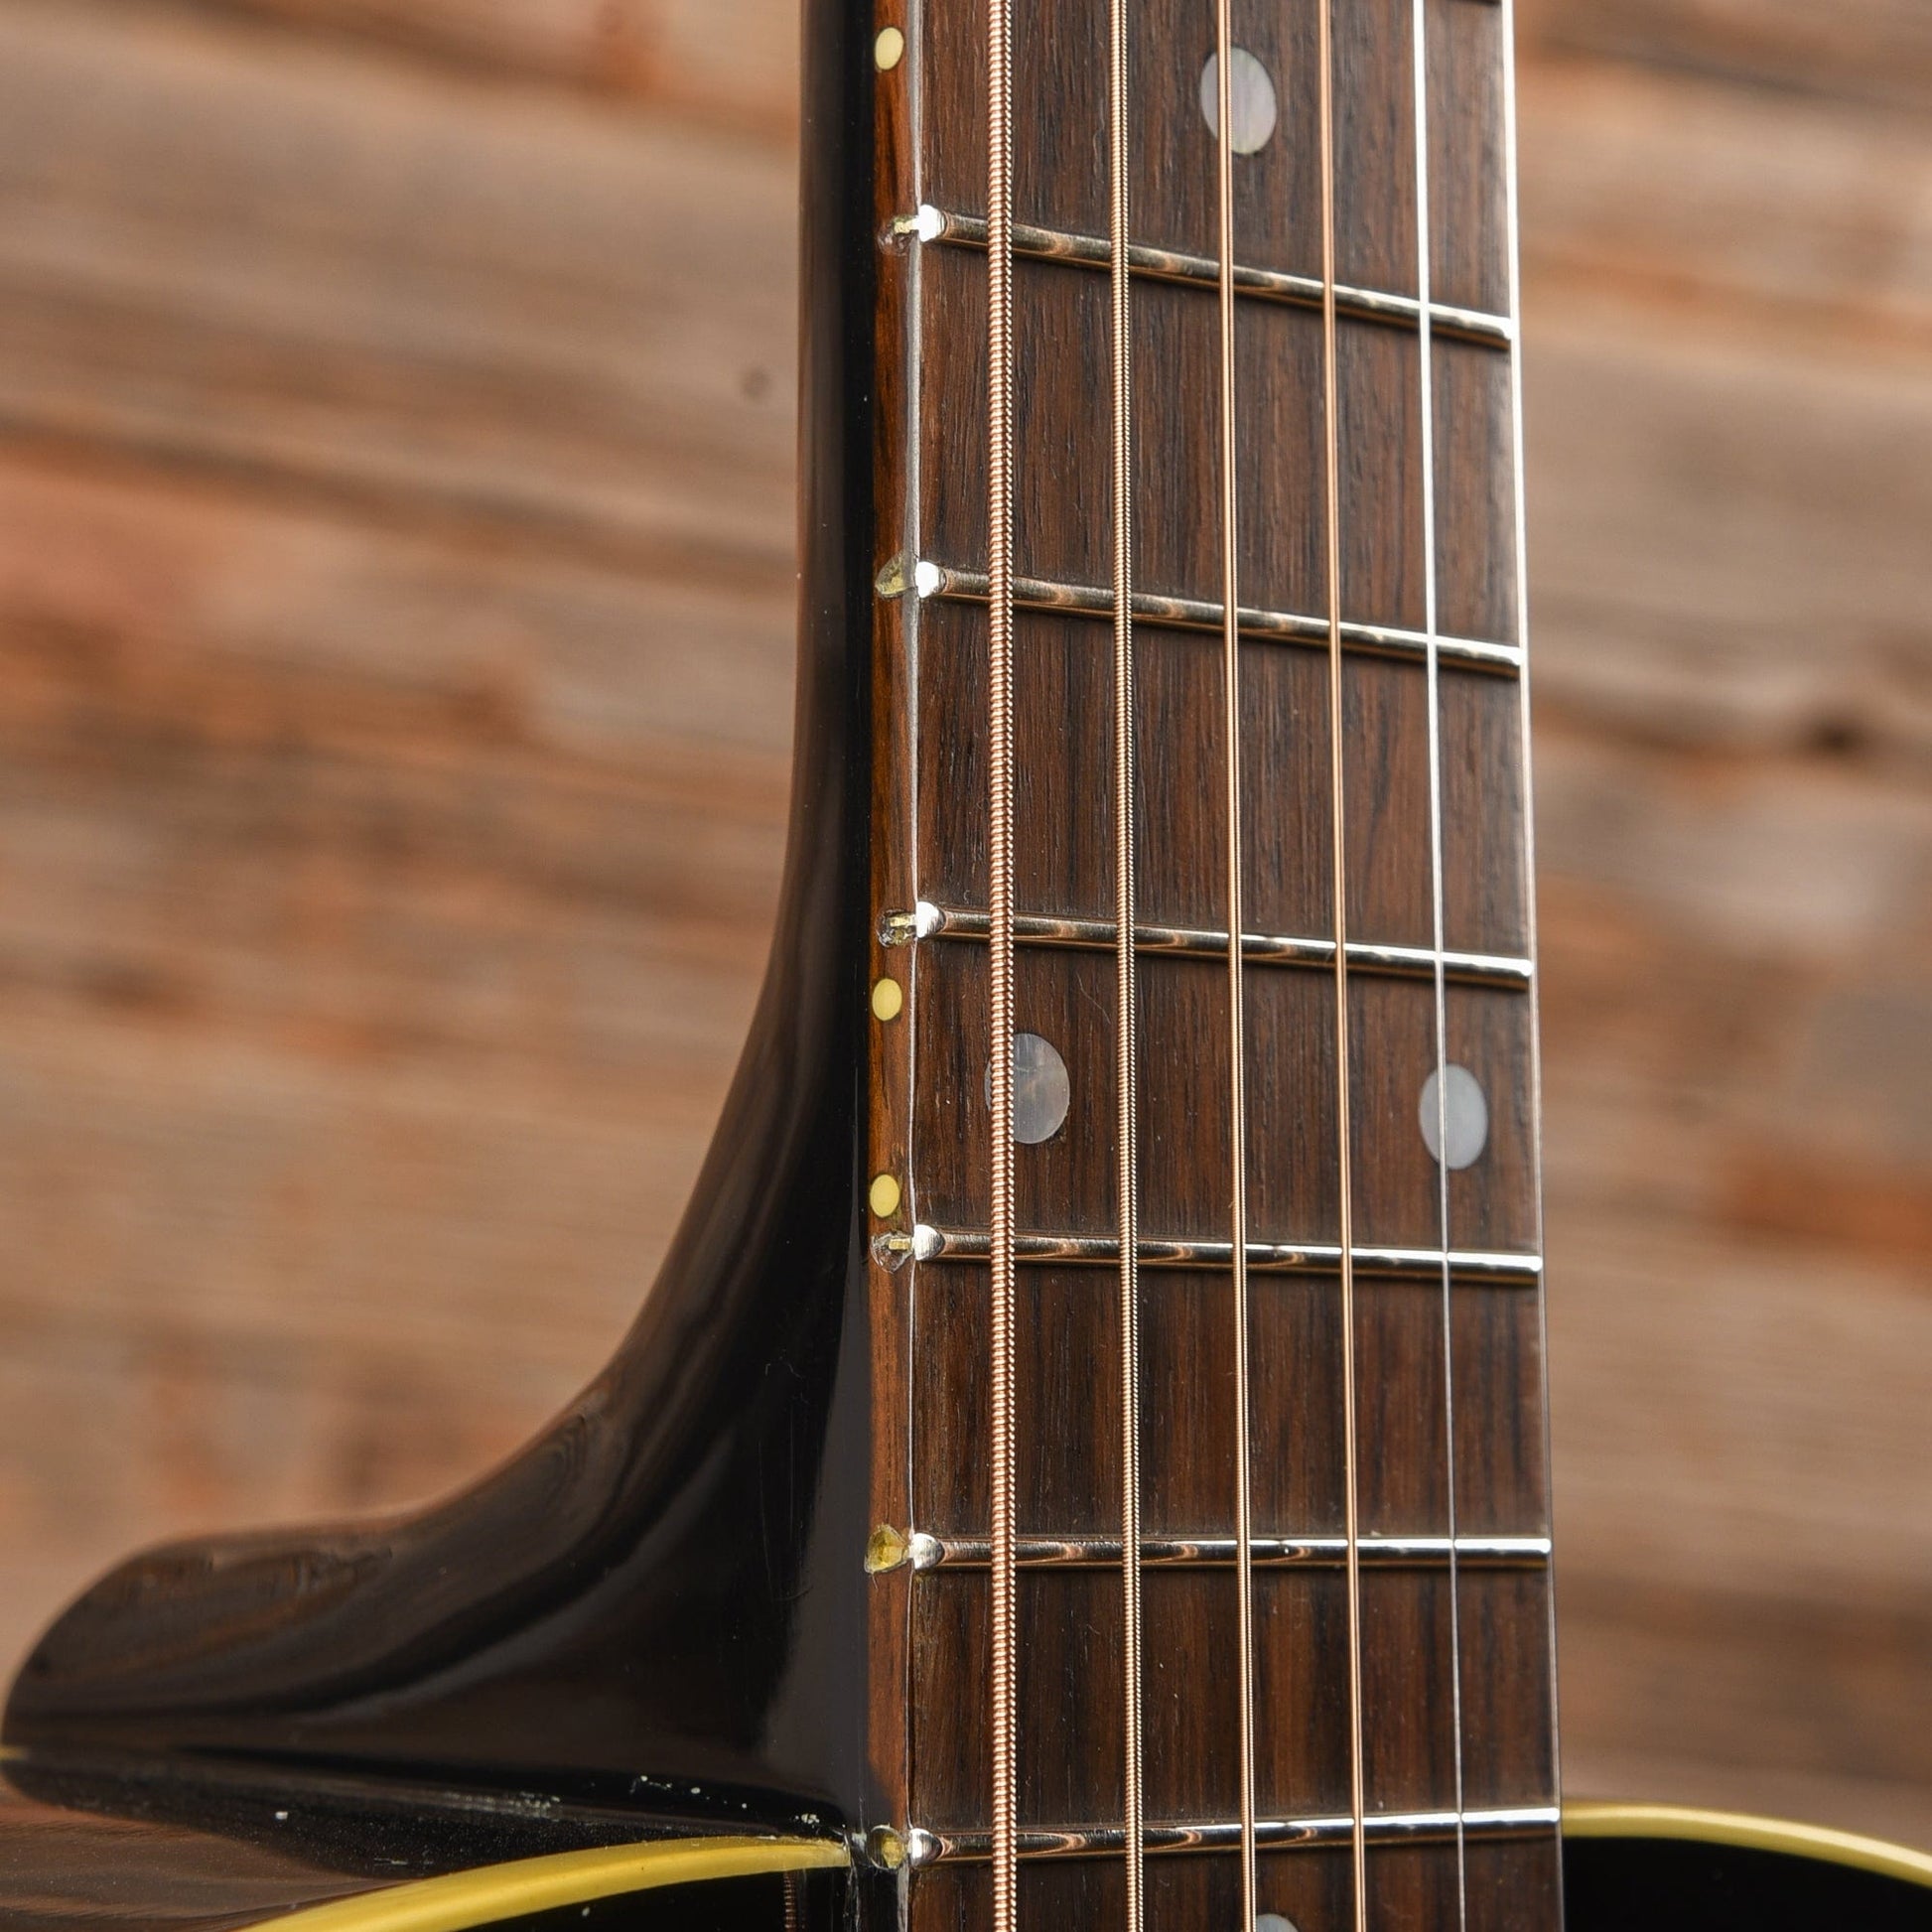 Gibson Kazuyoshi Saito J-35 Ebony 2018 Acoustic Guitars / Dreadnought